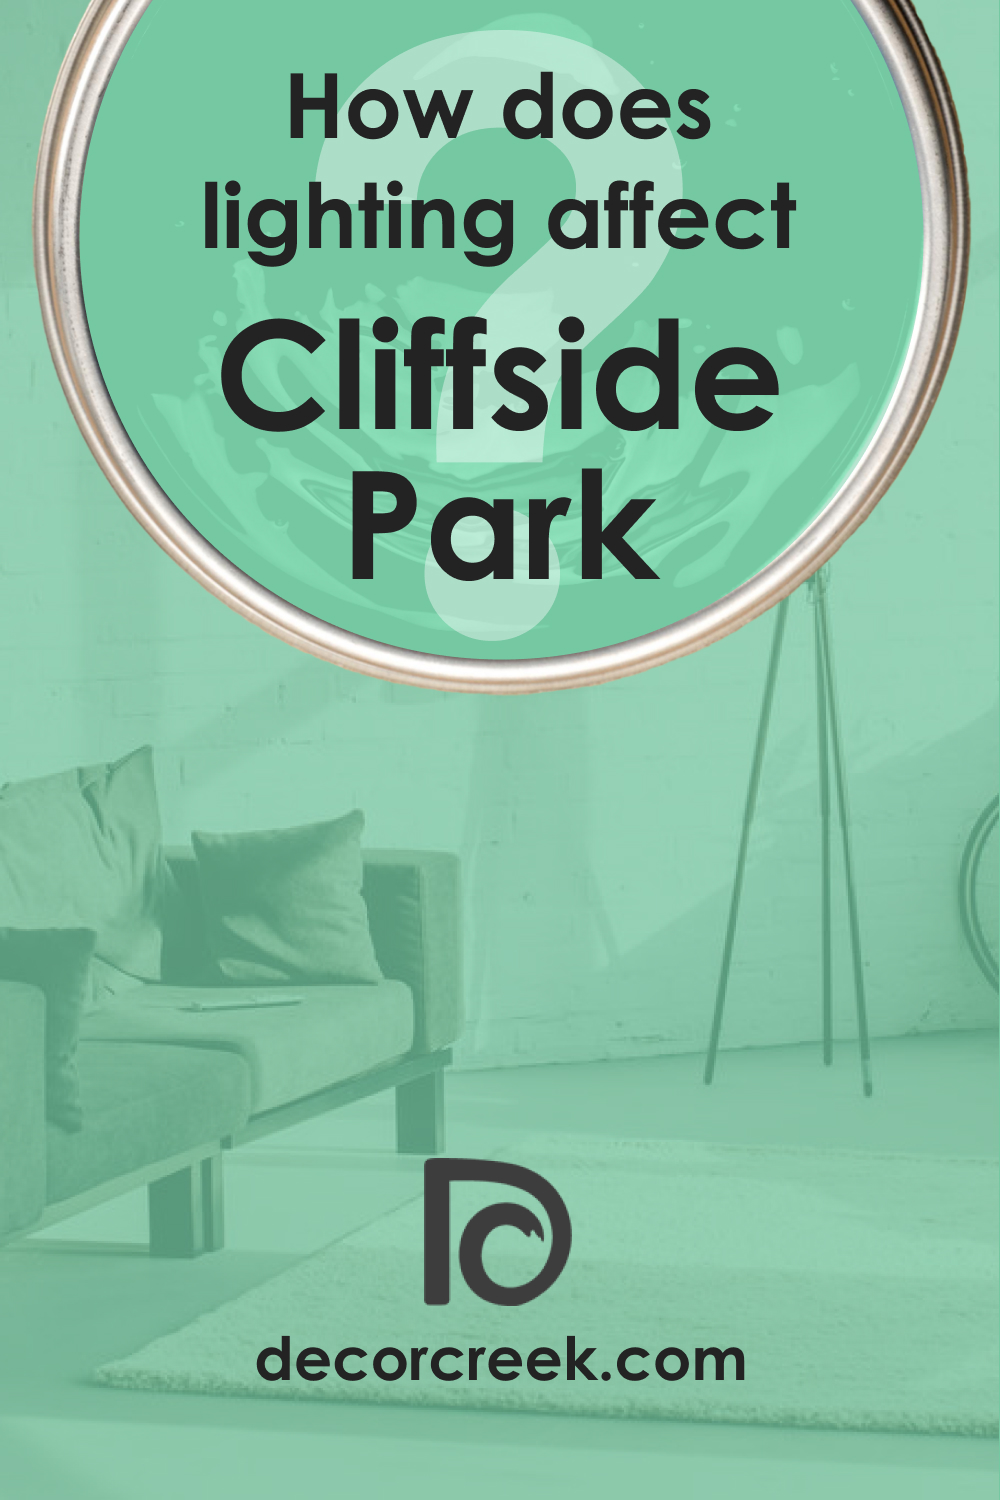 How Does Lighting Affect Cliffside Park 579?